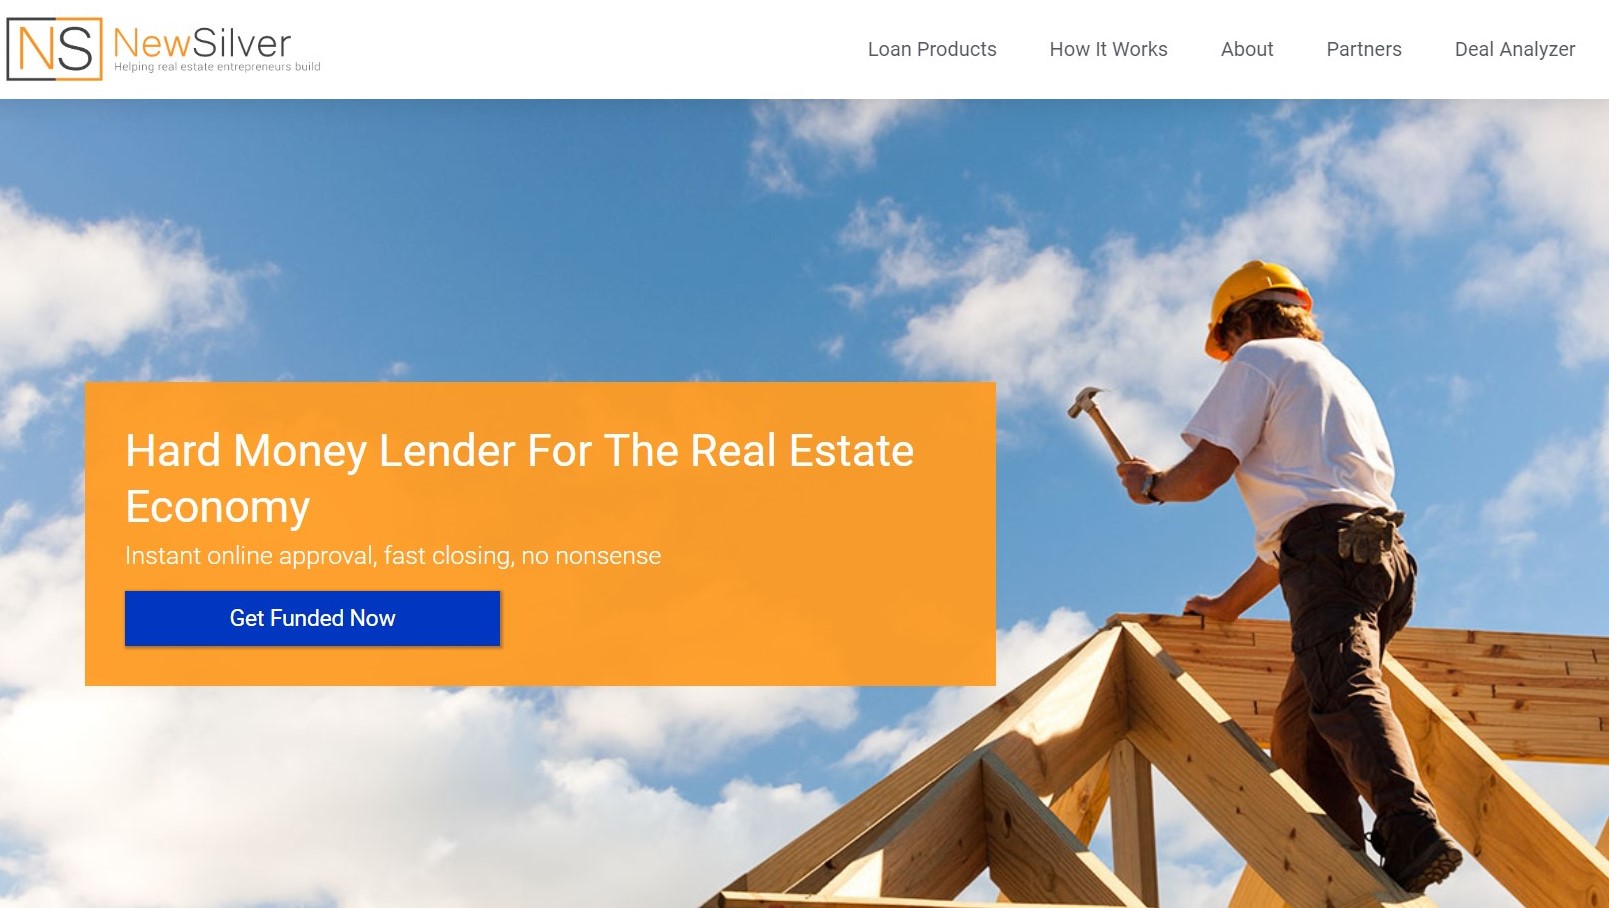 Hard Money Lender For The Real Estate Economy